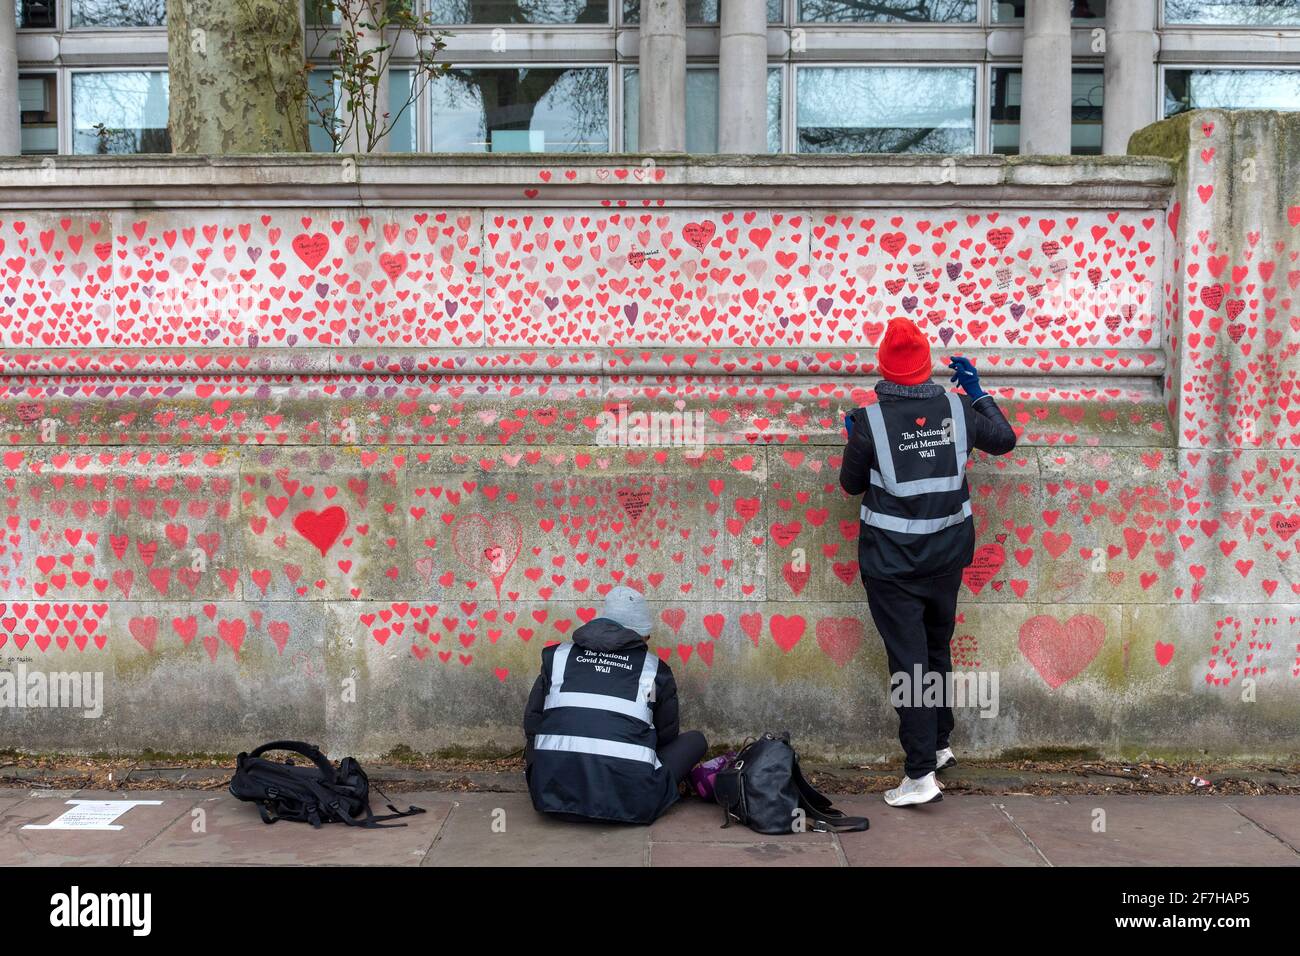 Los voluntarios pintan corazones rojos en la pared Conmemorativa Nacional de Covid.la pared está al lado del Hospital St Thomas y está siendo pintada a mano con 150000 corazones para honrar a las víctimas Covid-19 del Reino Unido, se extiende sobre 700 metros de largo. Foto de stock